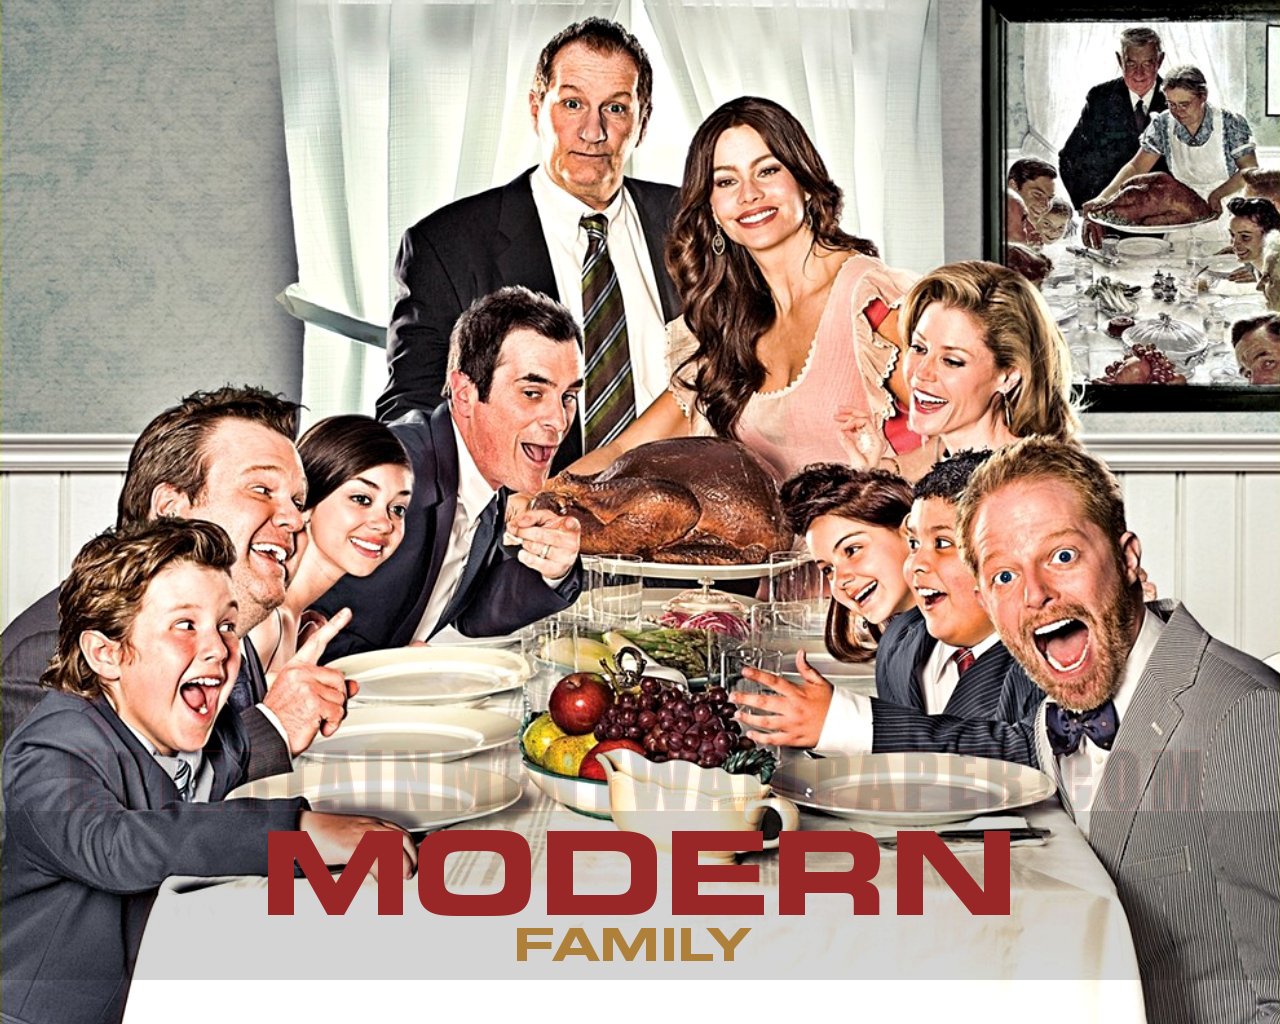 49+] Modern Family Wallpaper - WallpaperSafari